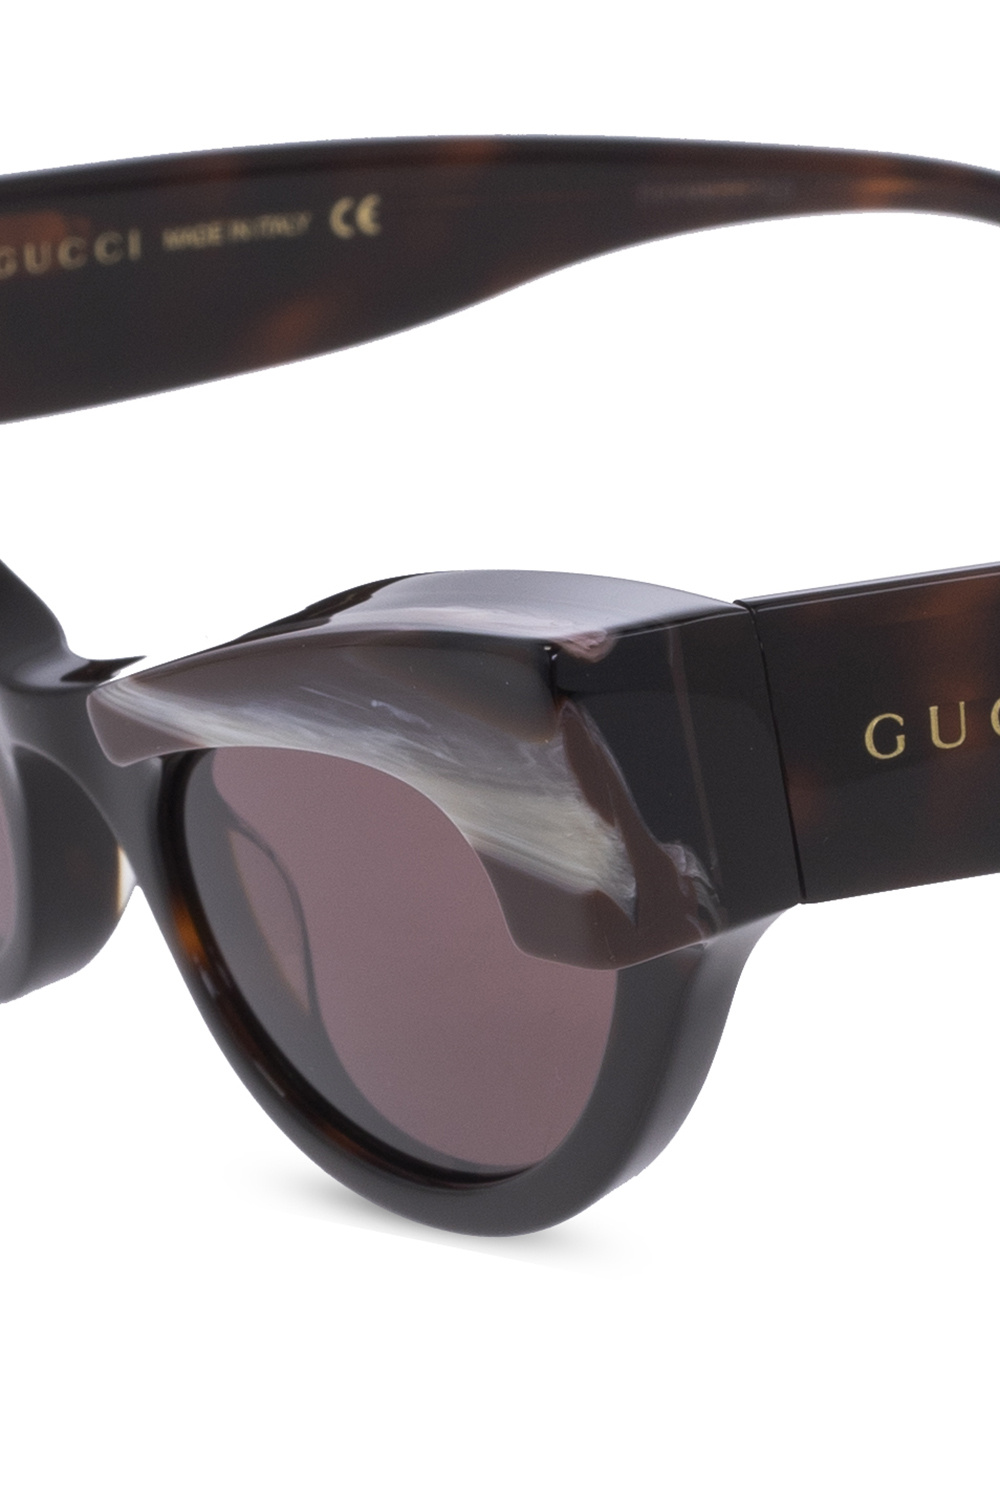 Gucci sunglasses VA2010B with logo